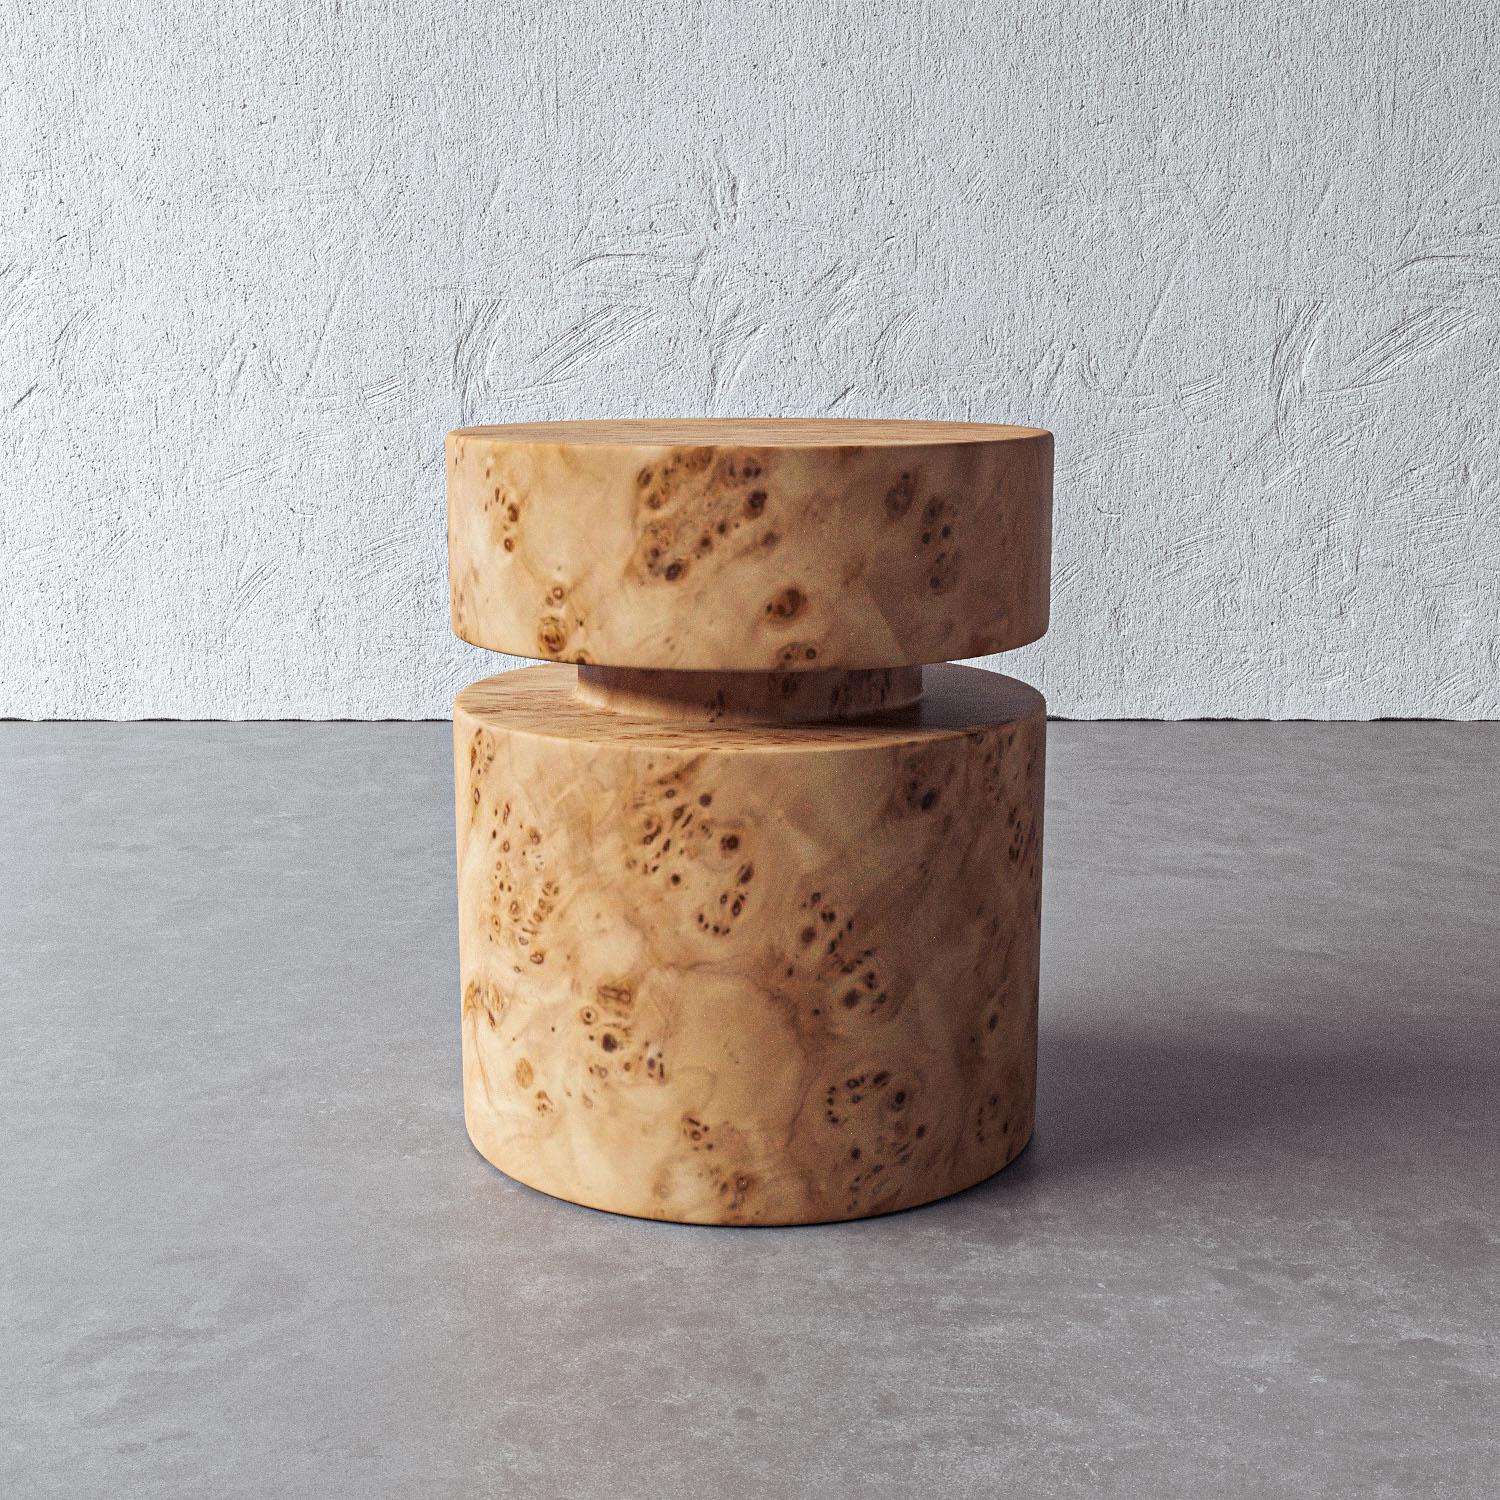 Die schlichte zylindrische Form dieses Beistelltisches hebt das natürliche Mappa-Maserholz hervor und setzt einen skulpturalen, funktionalen Akzent für jeden Raum. Dieses von Kunsthandwerkern in Vietnam handgefertigte Stück passt zu jeder warmen